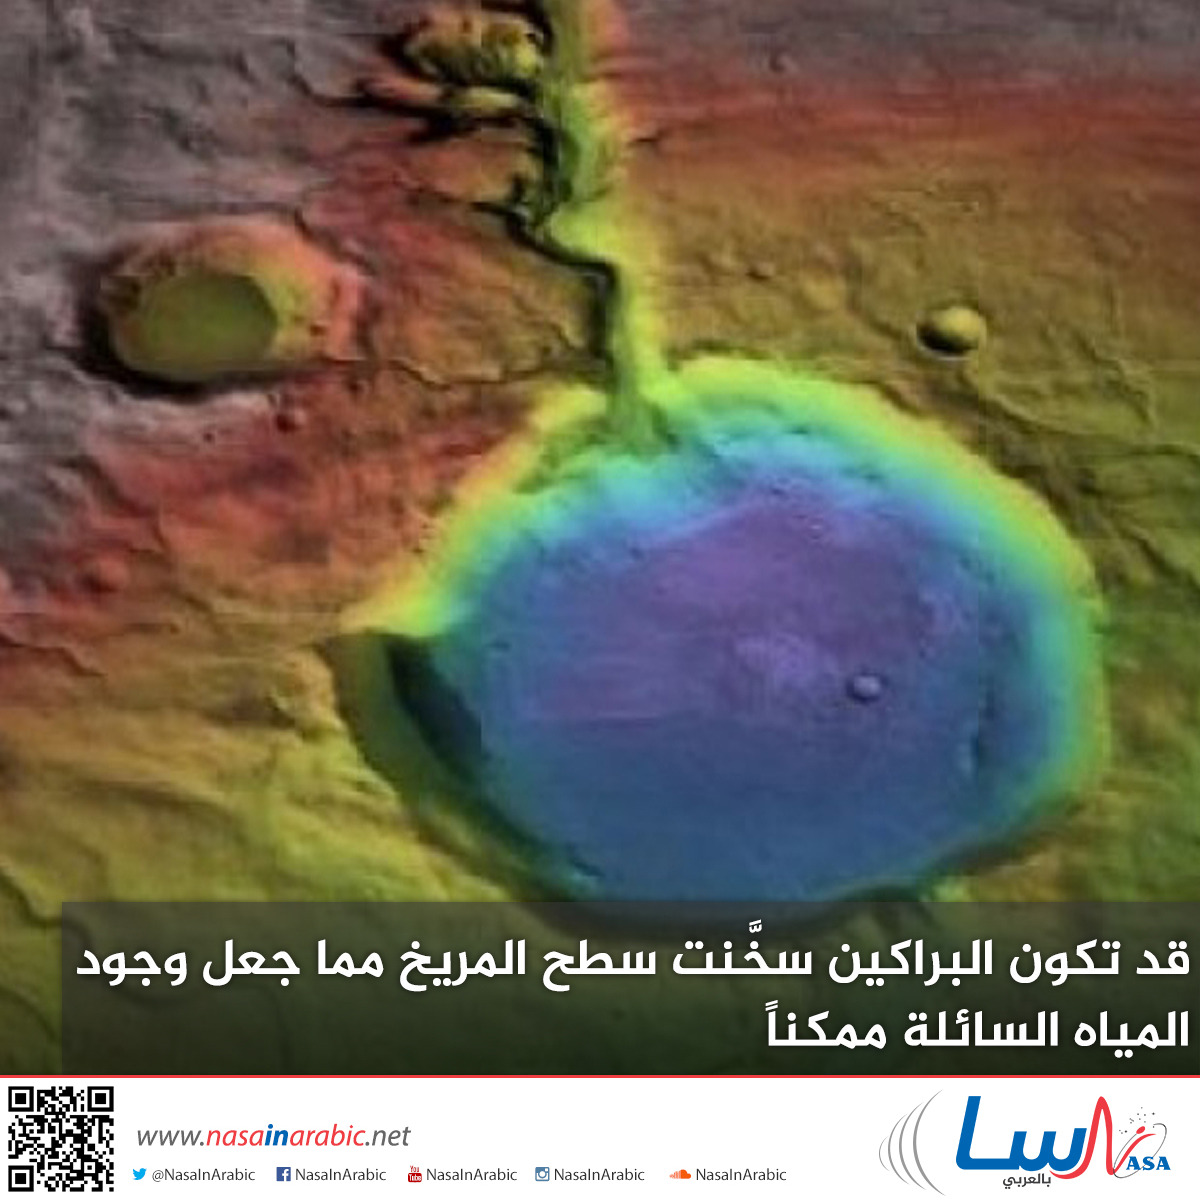 قد تكون البراكين سخَّنت سطح المريخ مما جعل وجود المياه السائلة ممكناً